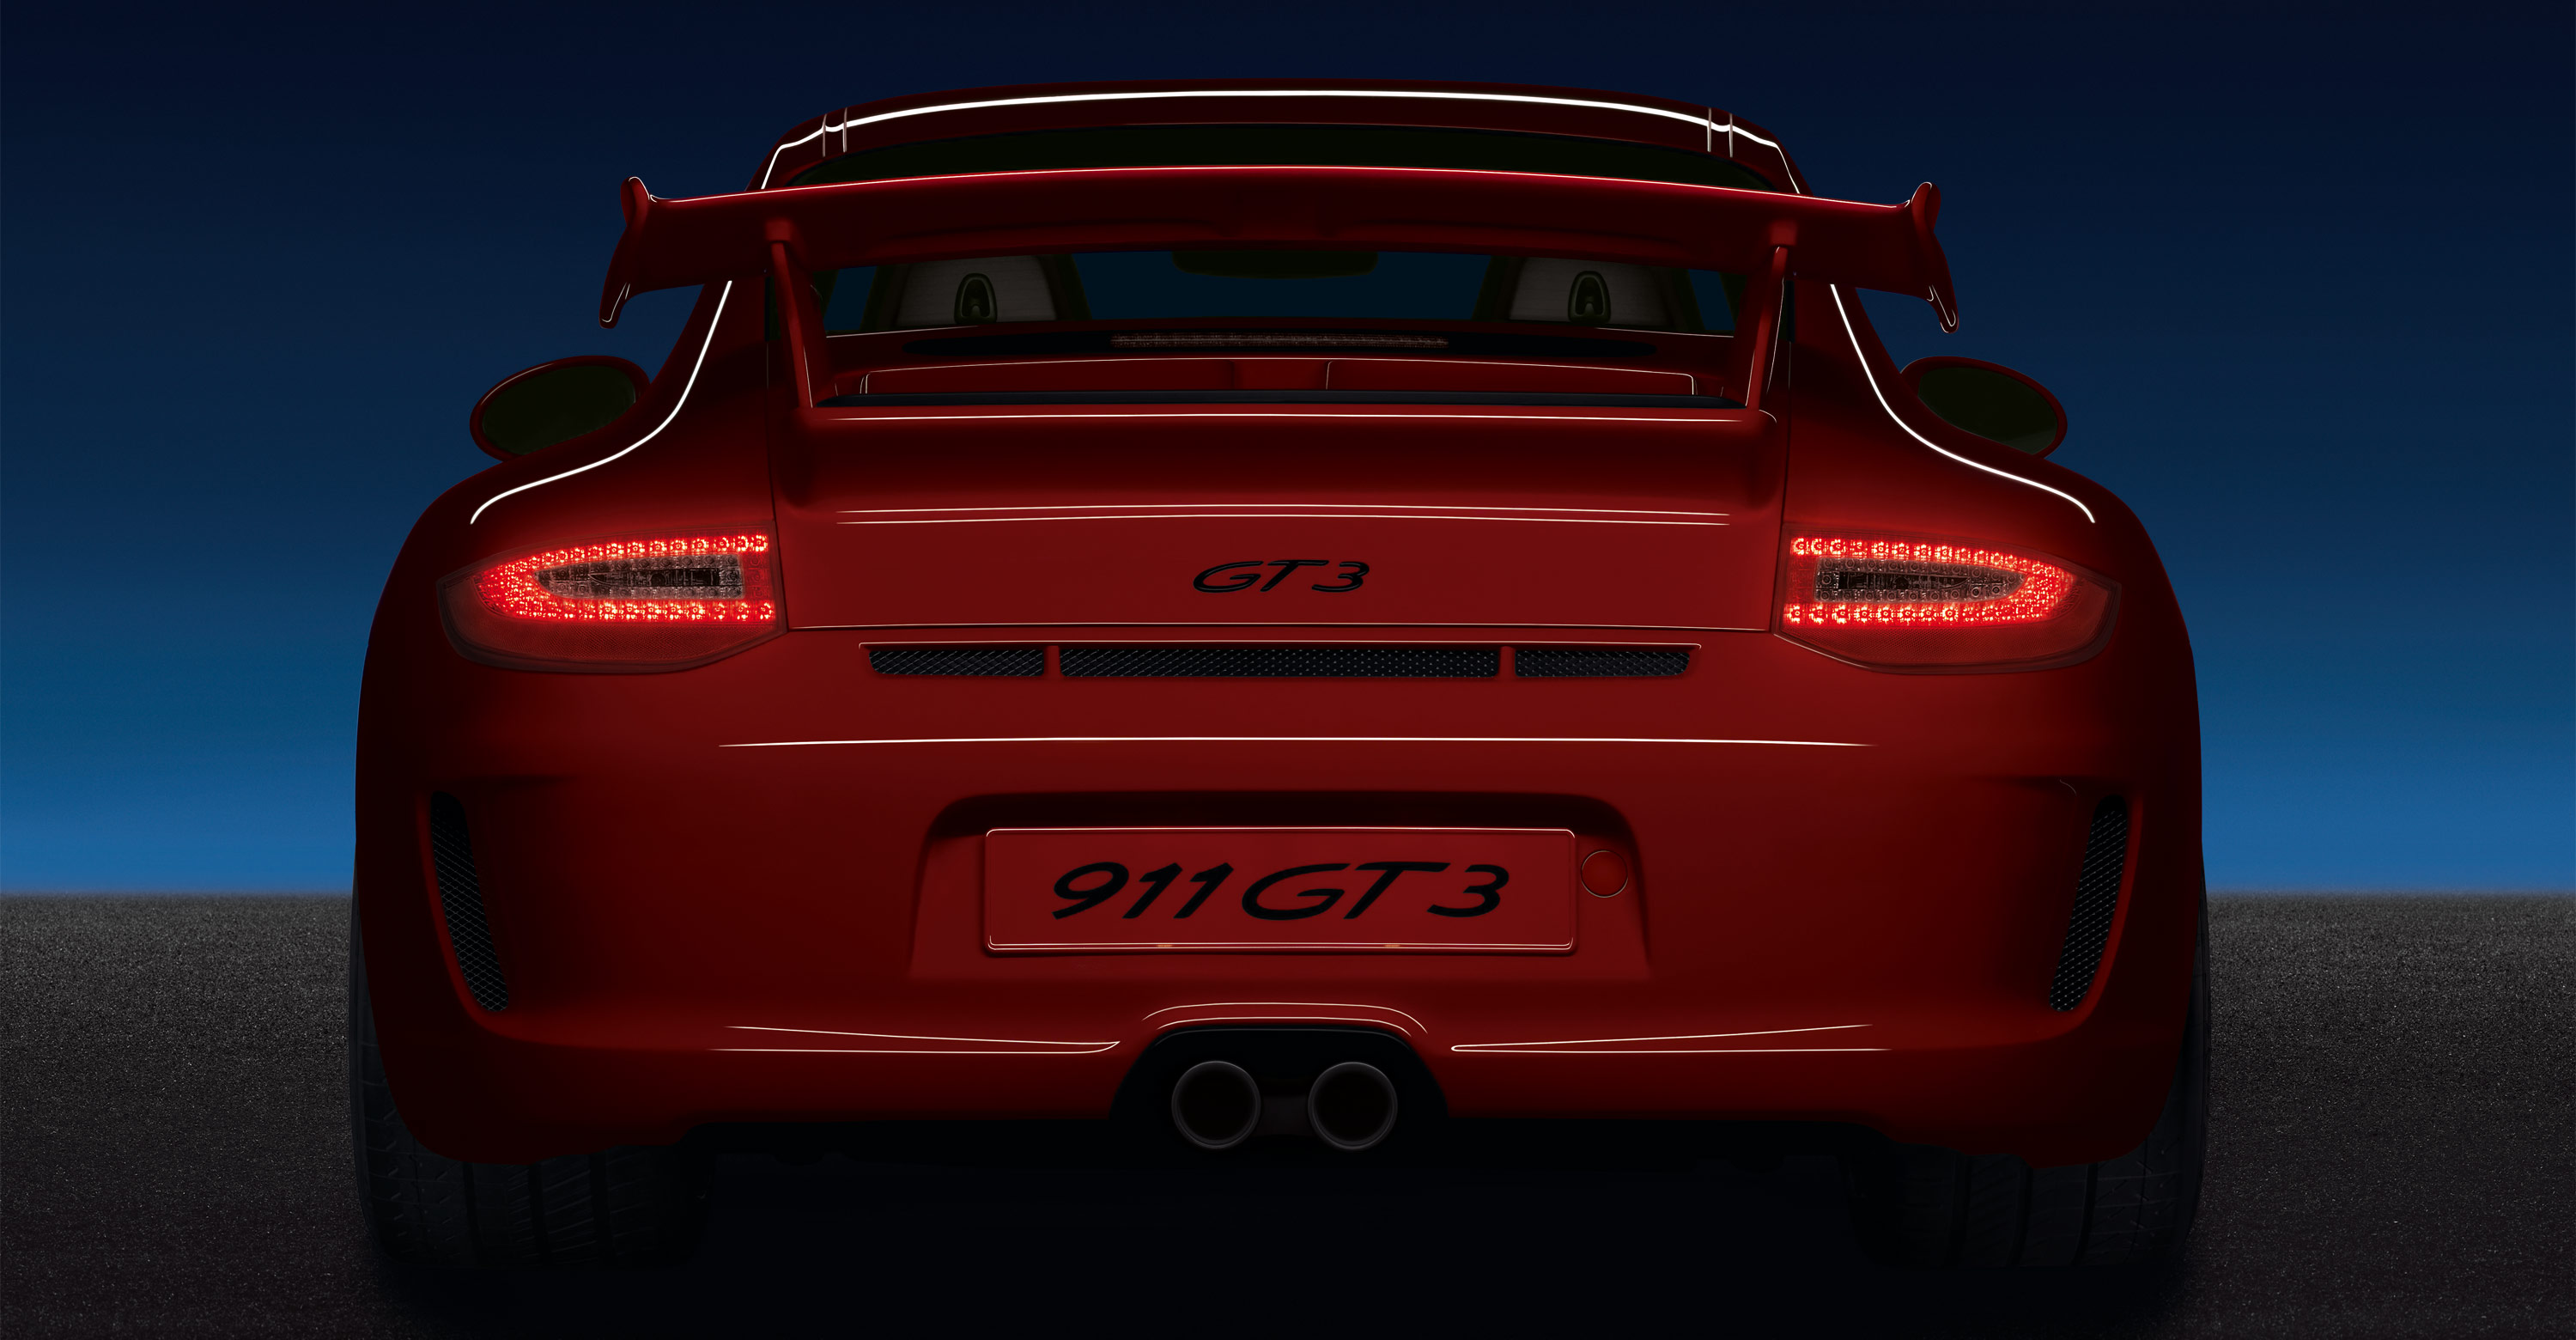 Porsche, cars, Porsche 911 GT3 - desktop wallpaper